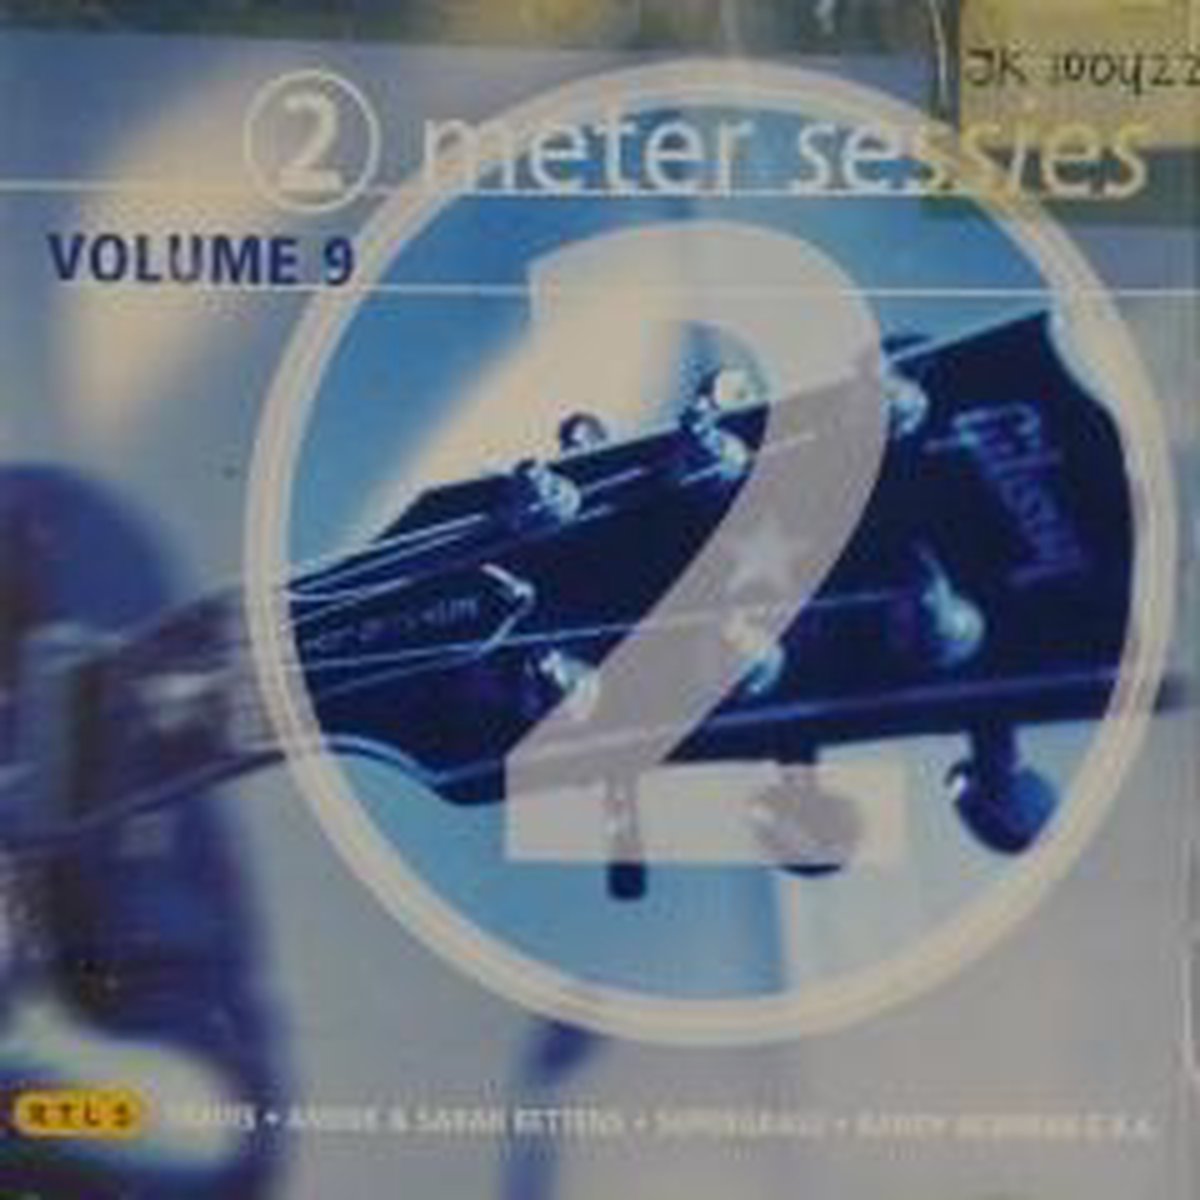 2 Meter Sessies 9, Various | CD (album) | Muziek | bol.com